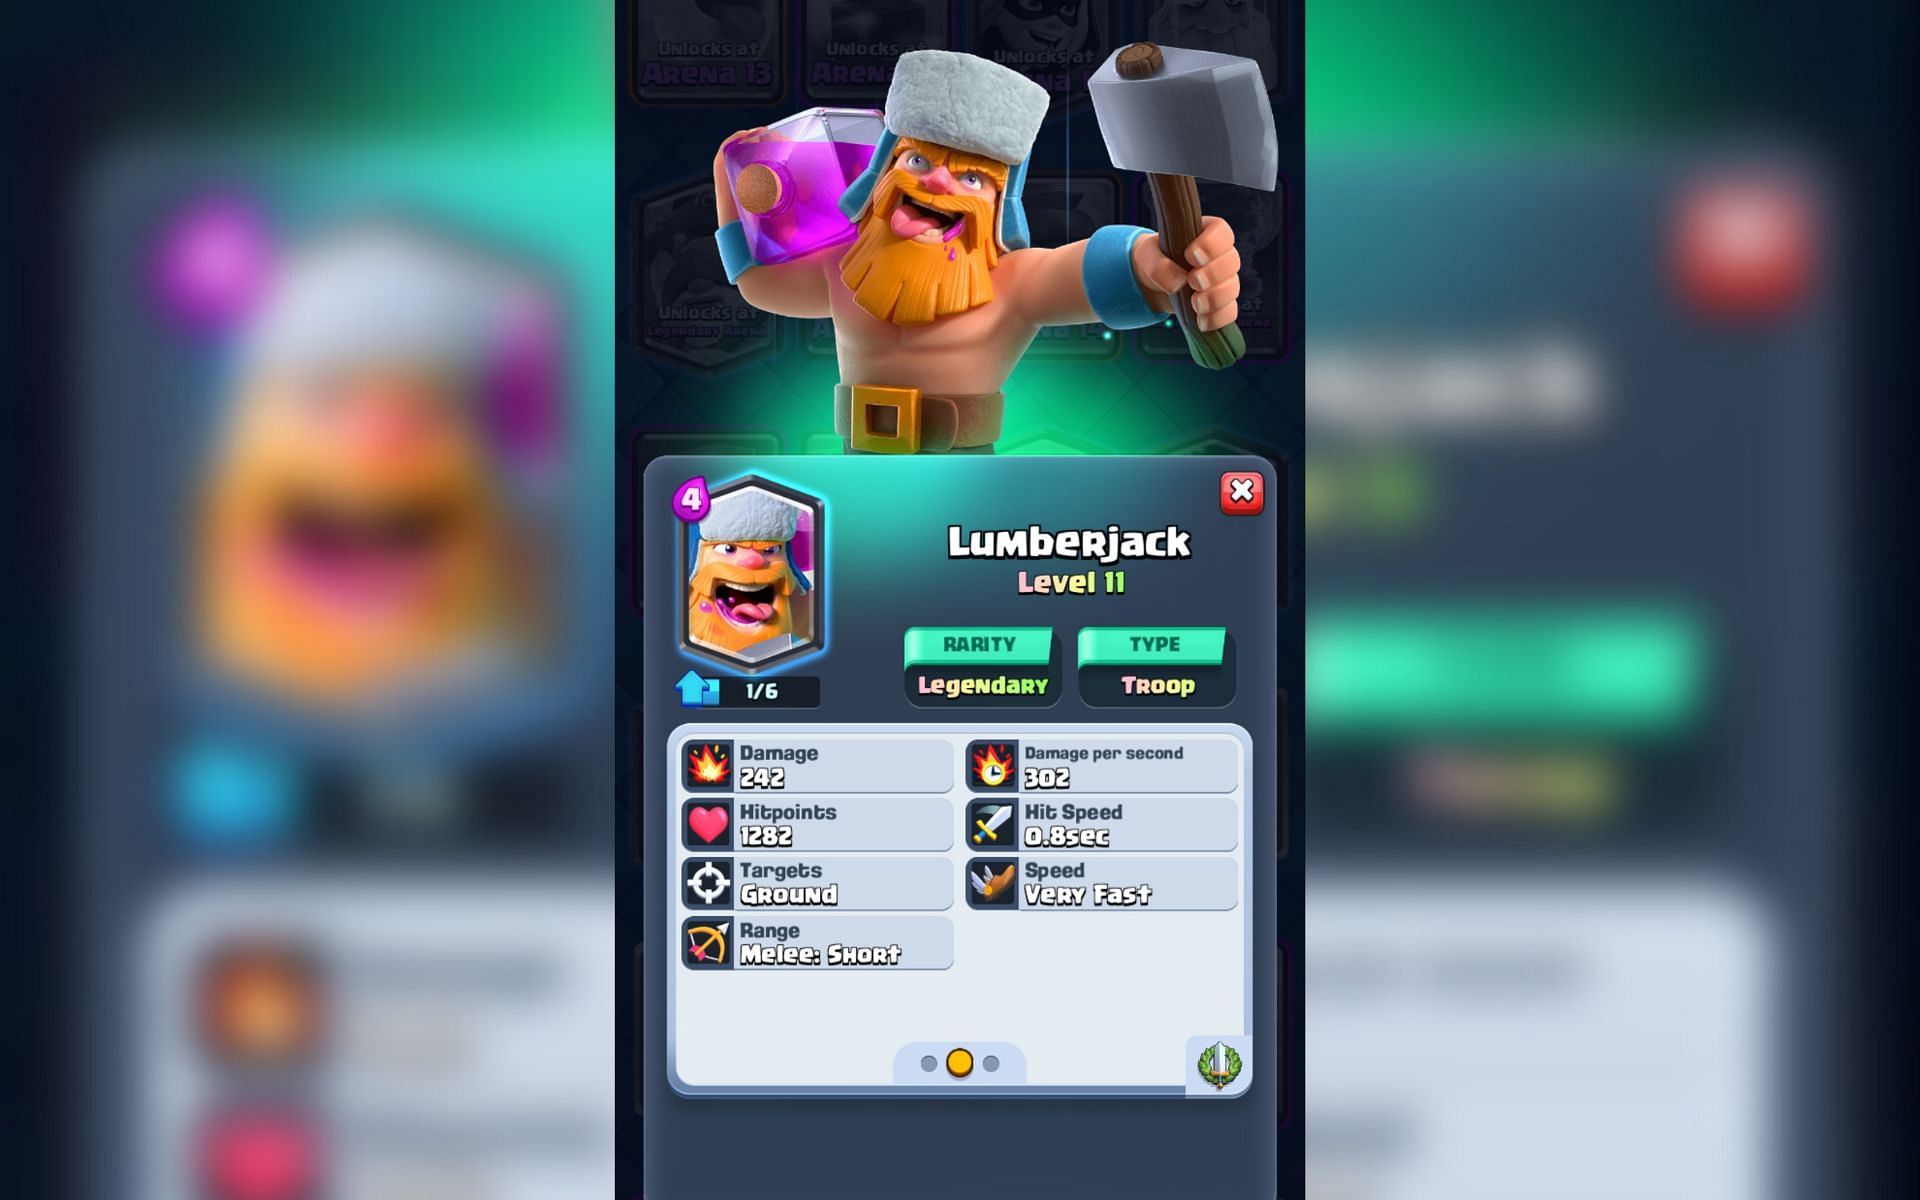 The Lumberjack card in Clash Royale (Image via Sportskeeda)